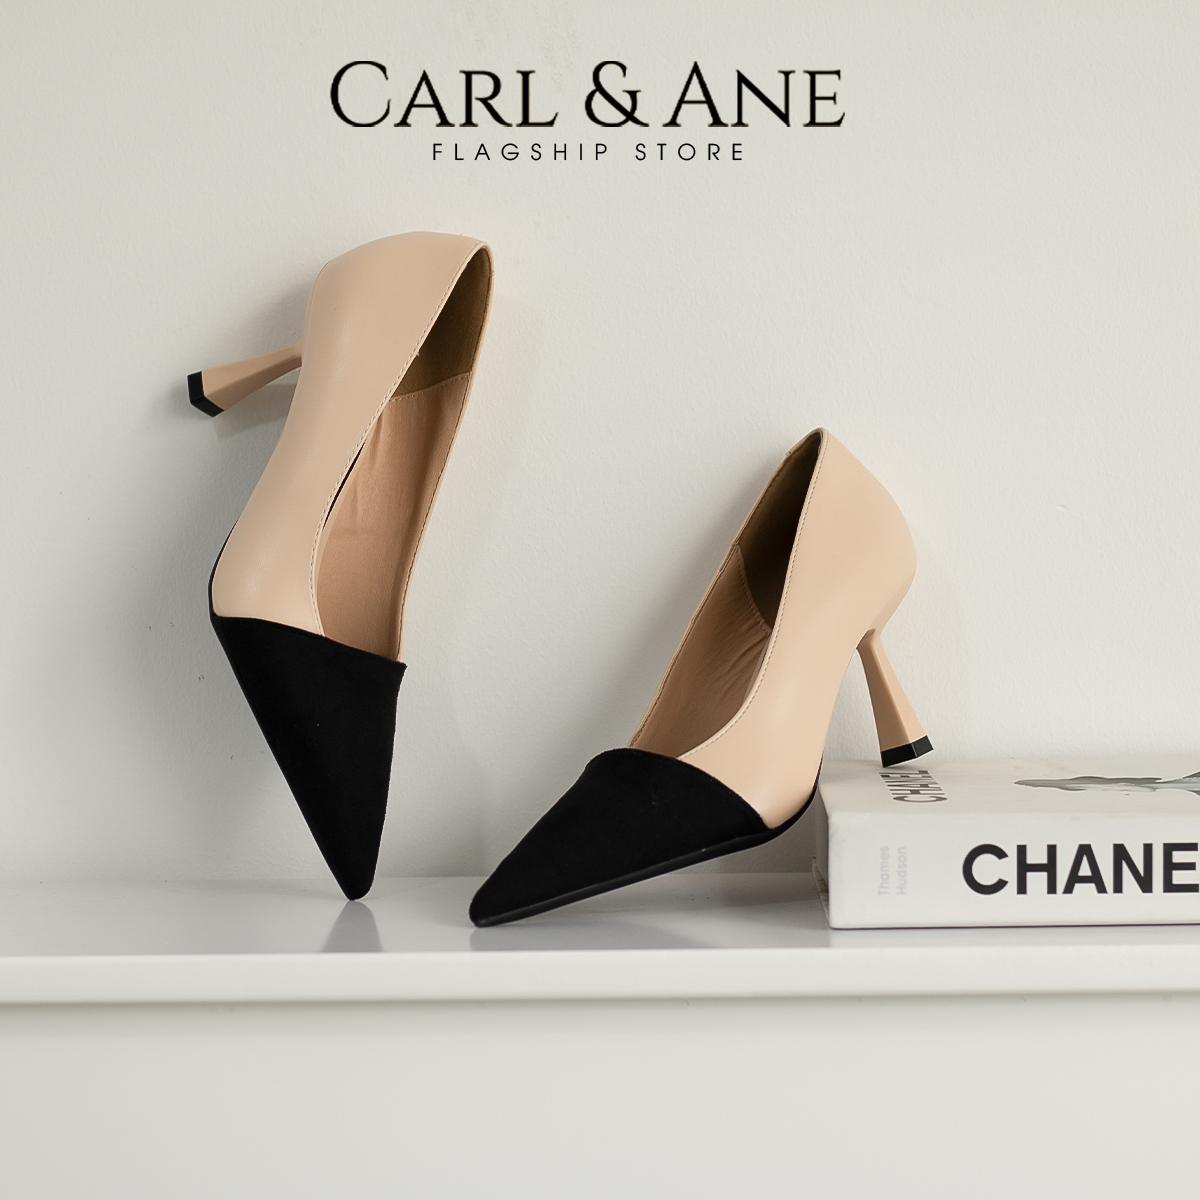 Carl & Ane - Giày cao gót mũi nhọn gót cao 7cm thời trang màu đen _ CP018